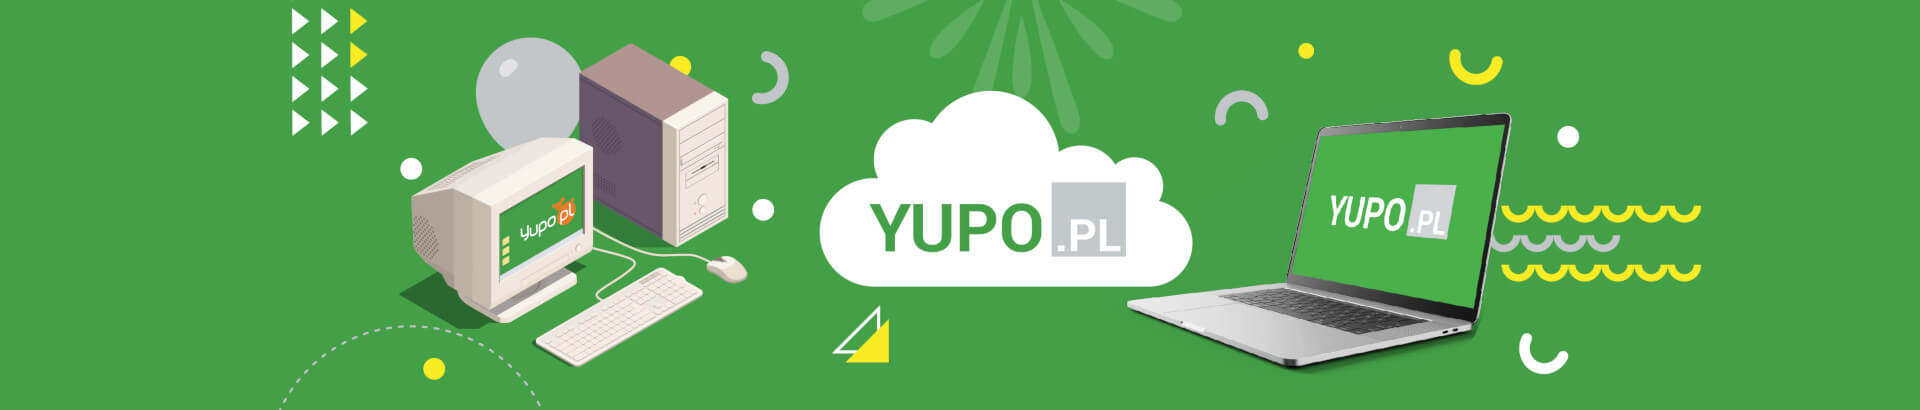 Yupo.pl - hosting, domeny, certyfikaty ssl